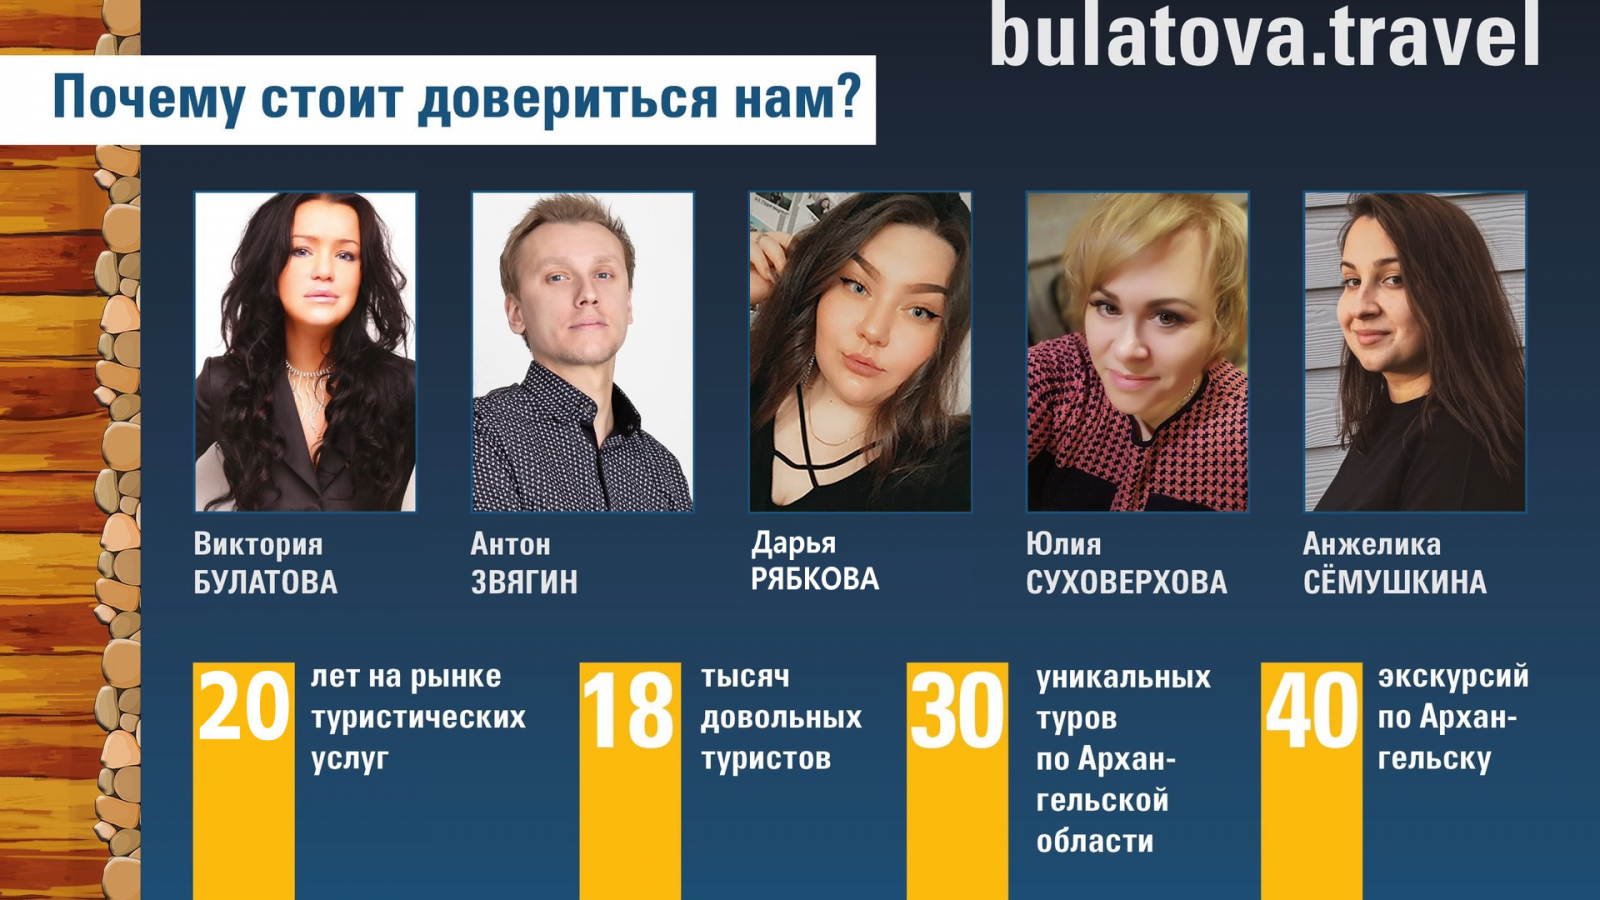 Команда Туристического центра Витории Булатовой